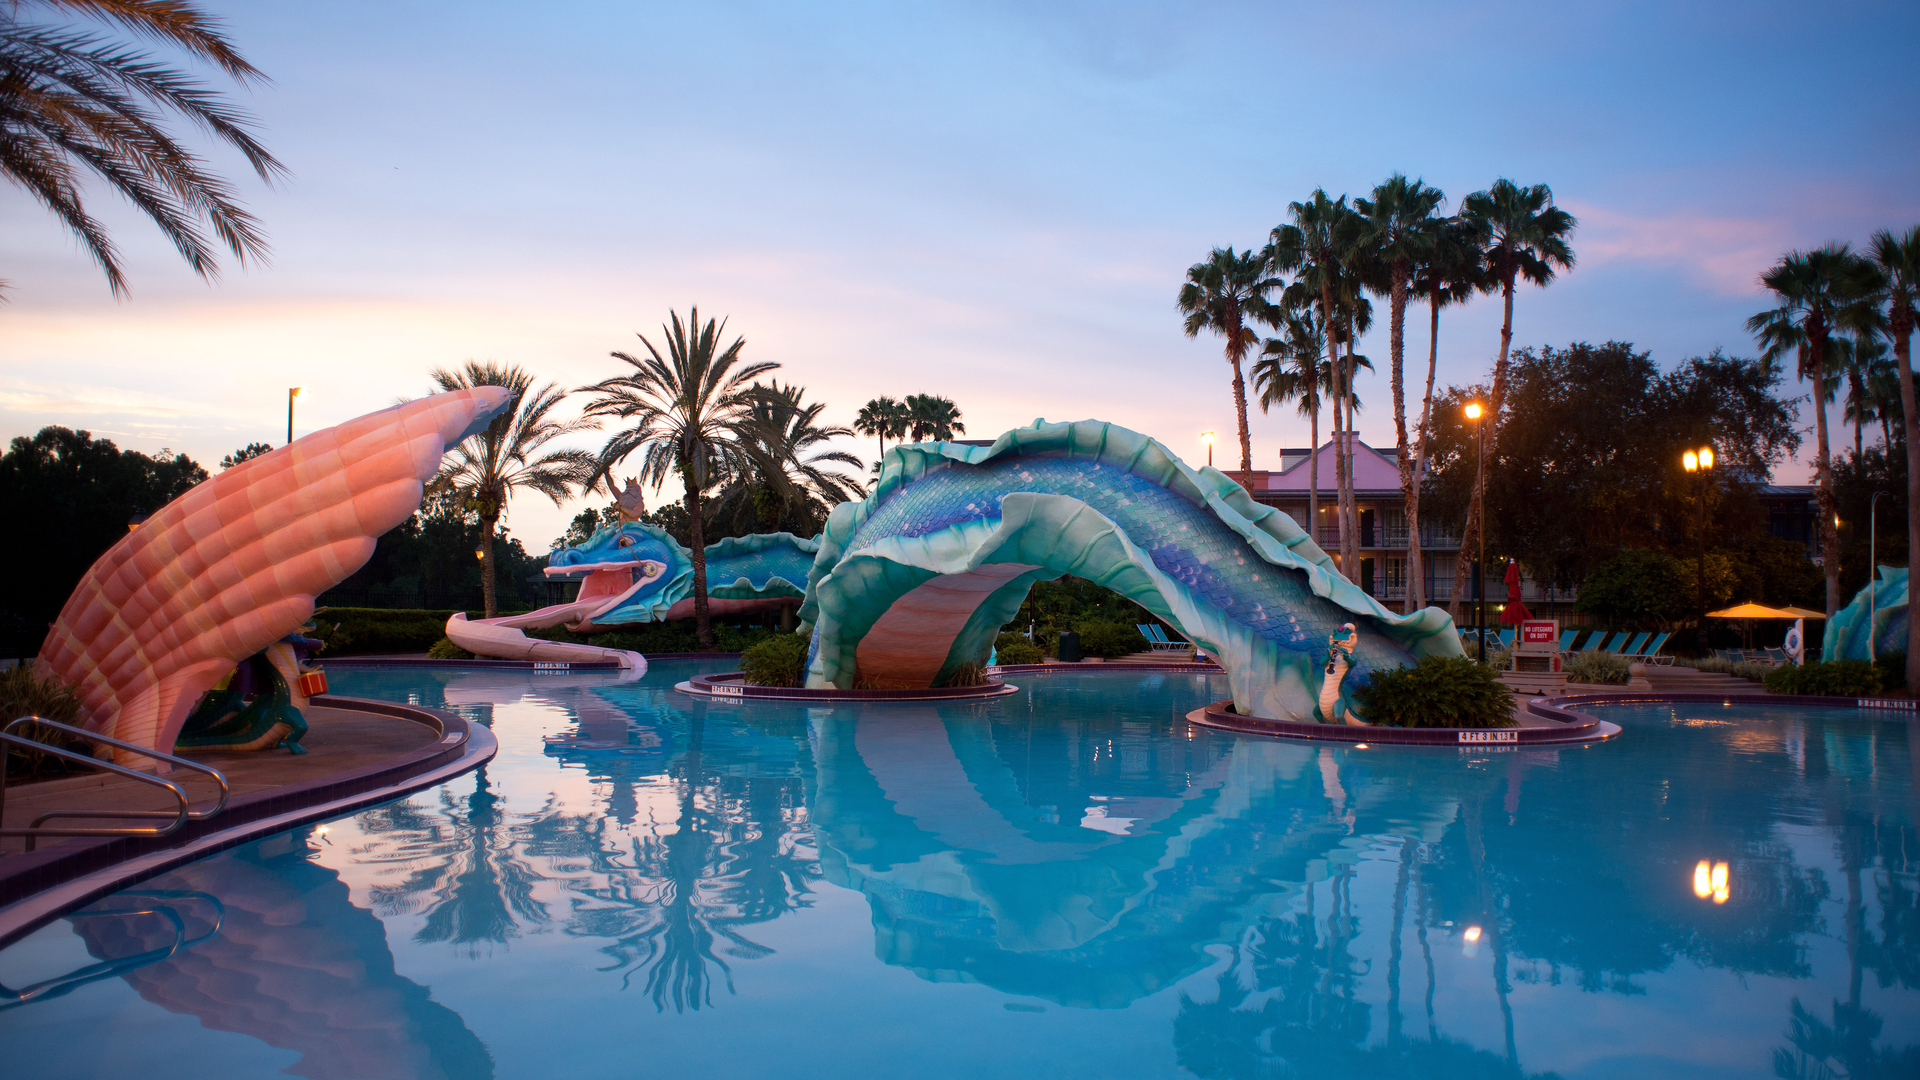 Disney's Port Orleans French Quarter Resort Pool